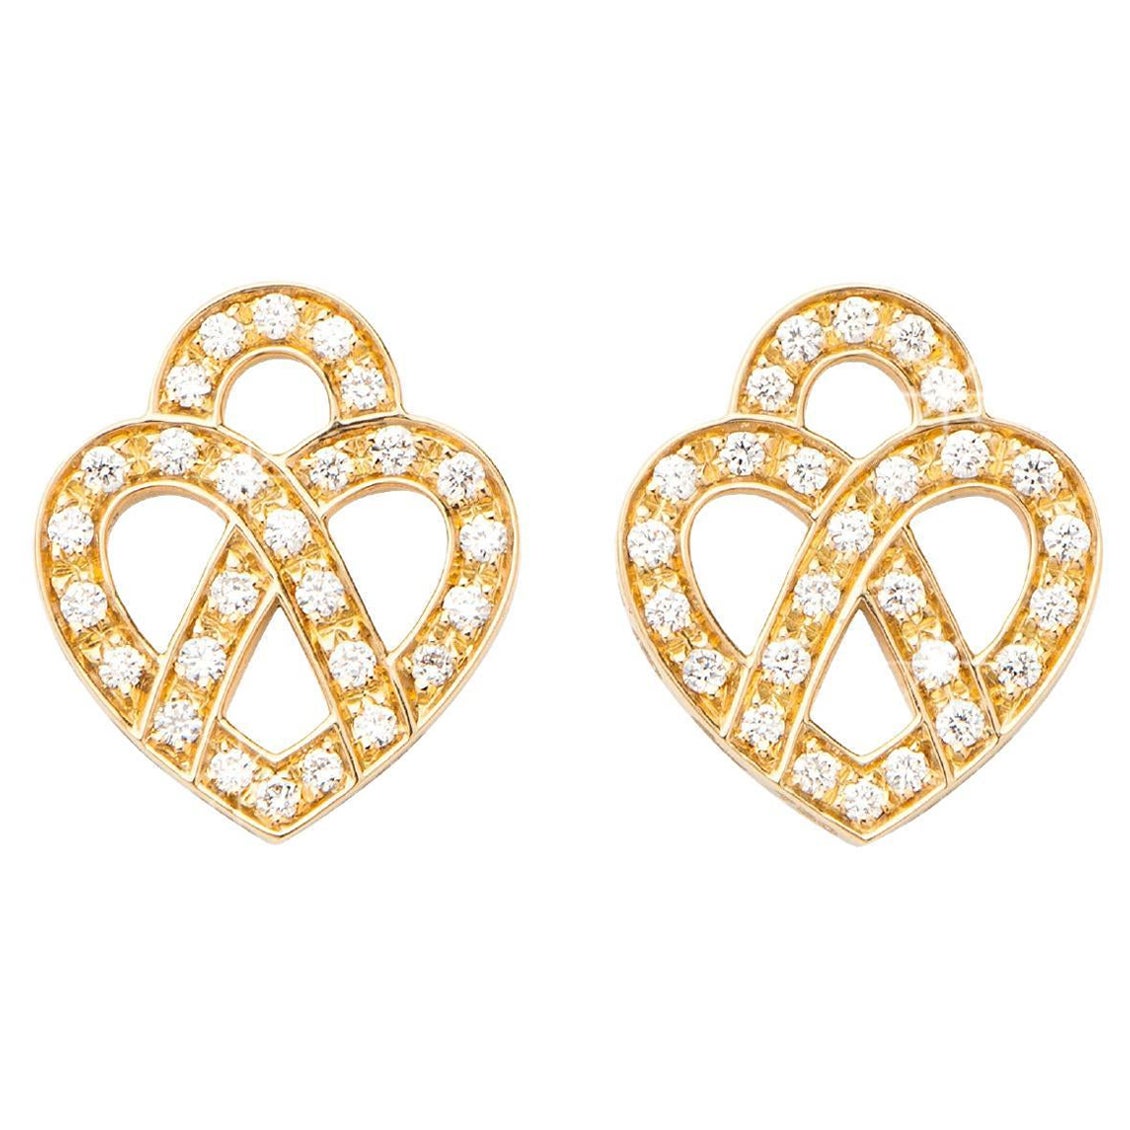 Boucles d'oreilles en or 18 carats et diamants, or jaune, collection Cœur Entrelacé